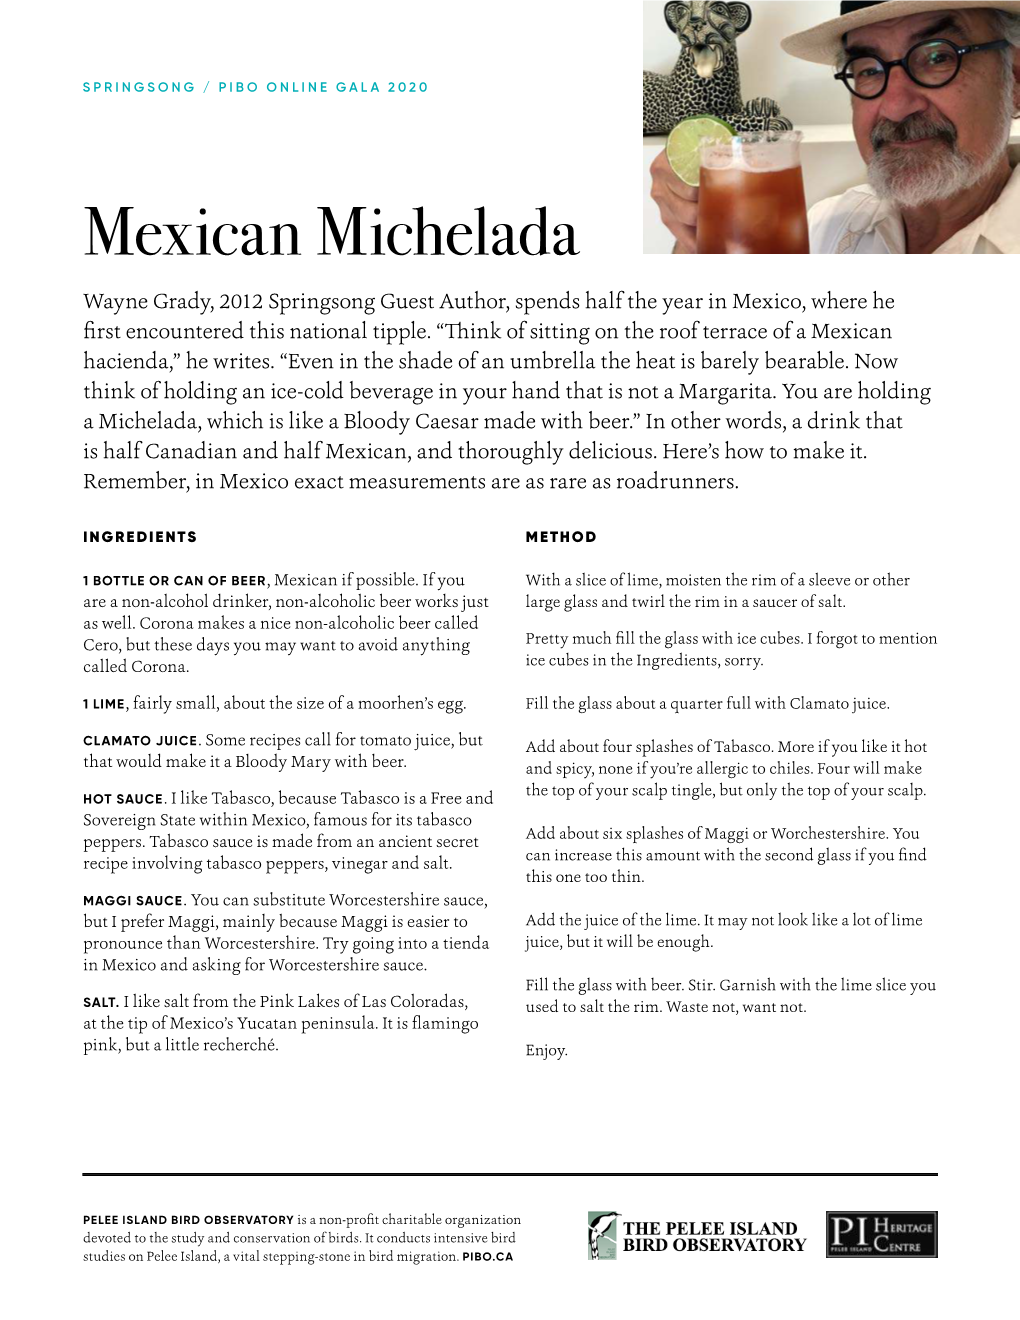 Mexican Michelada